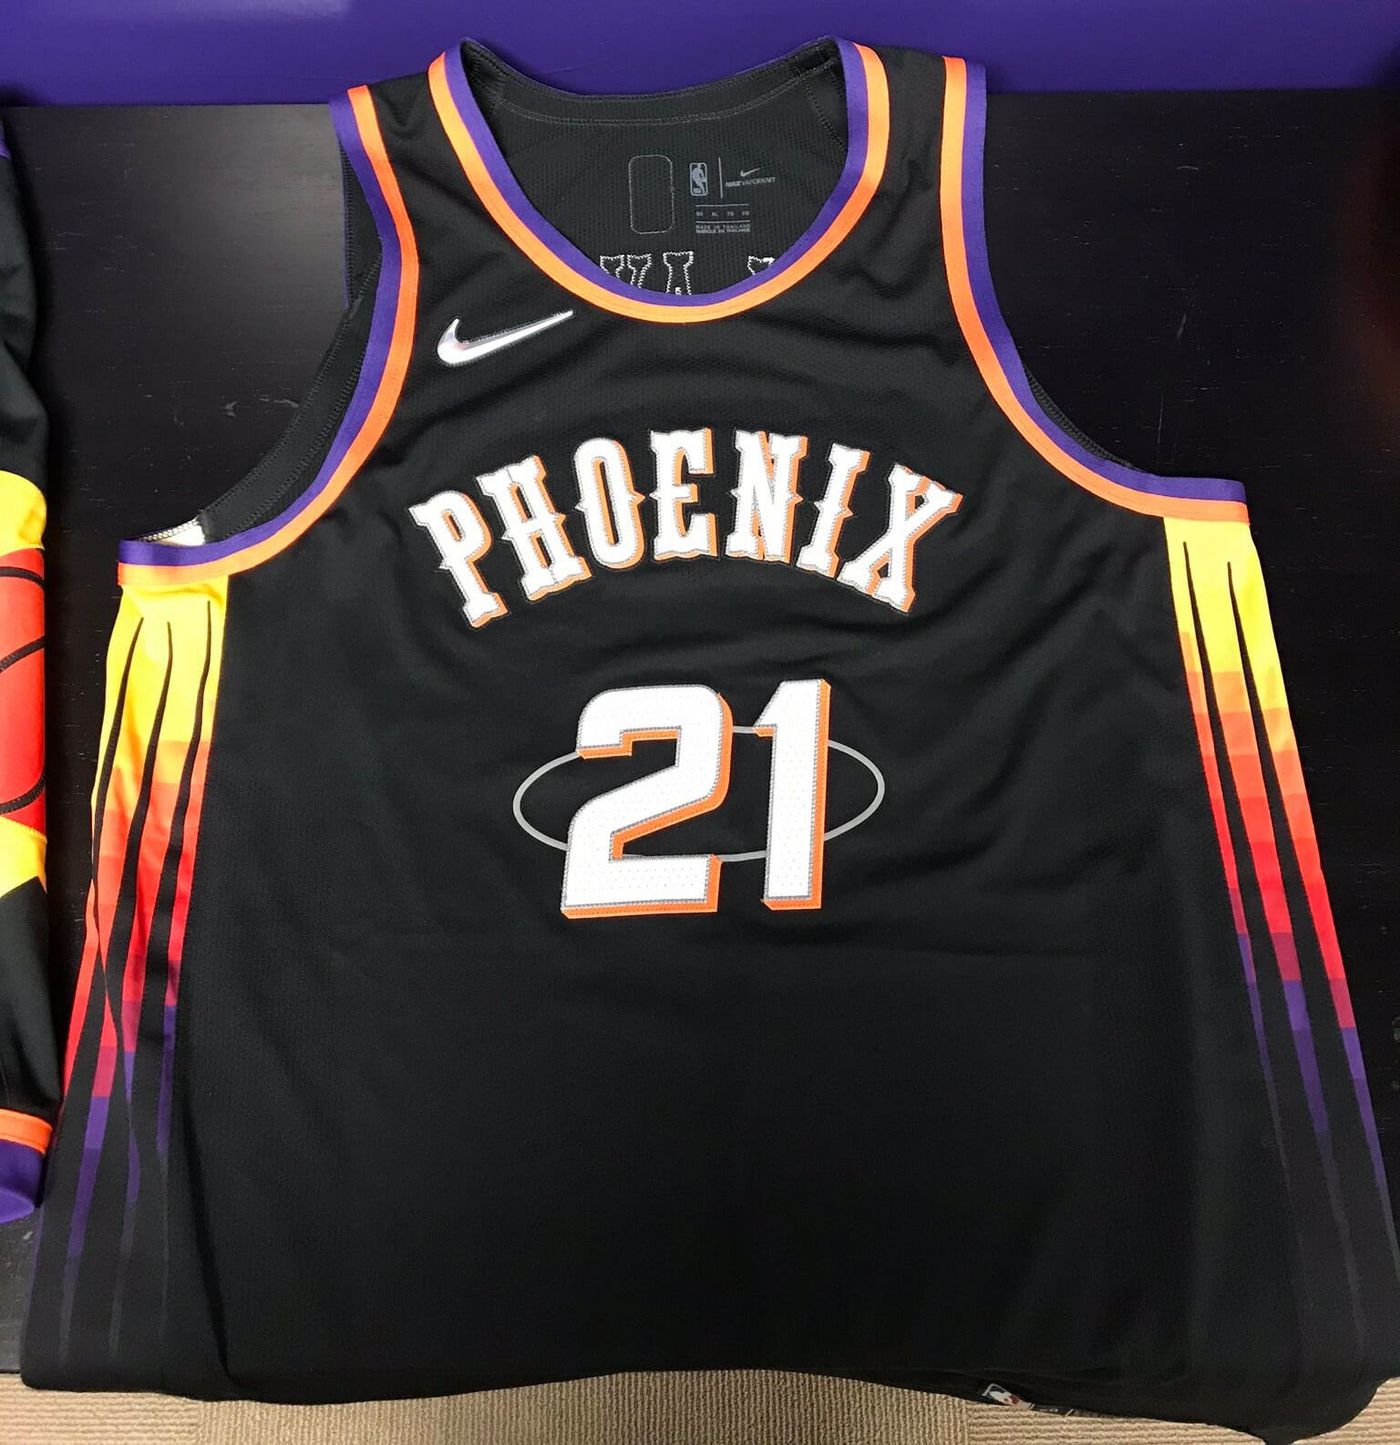 new phoenix suns jersey 2022